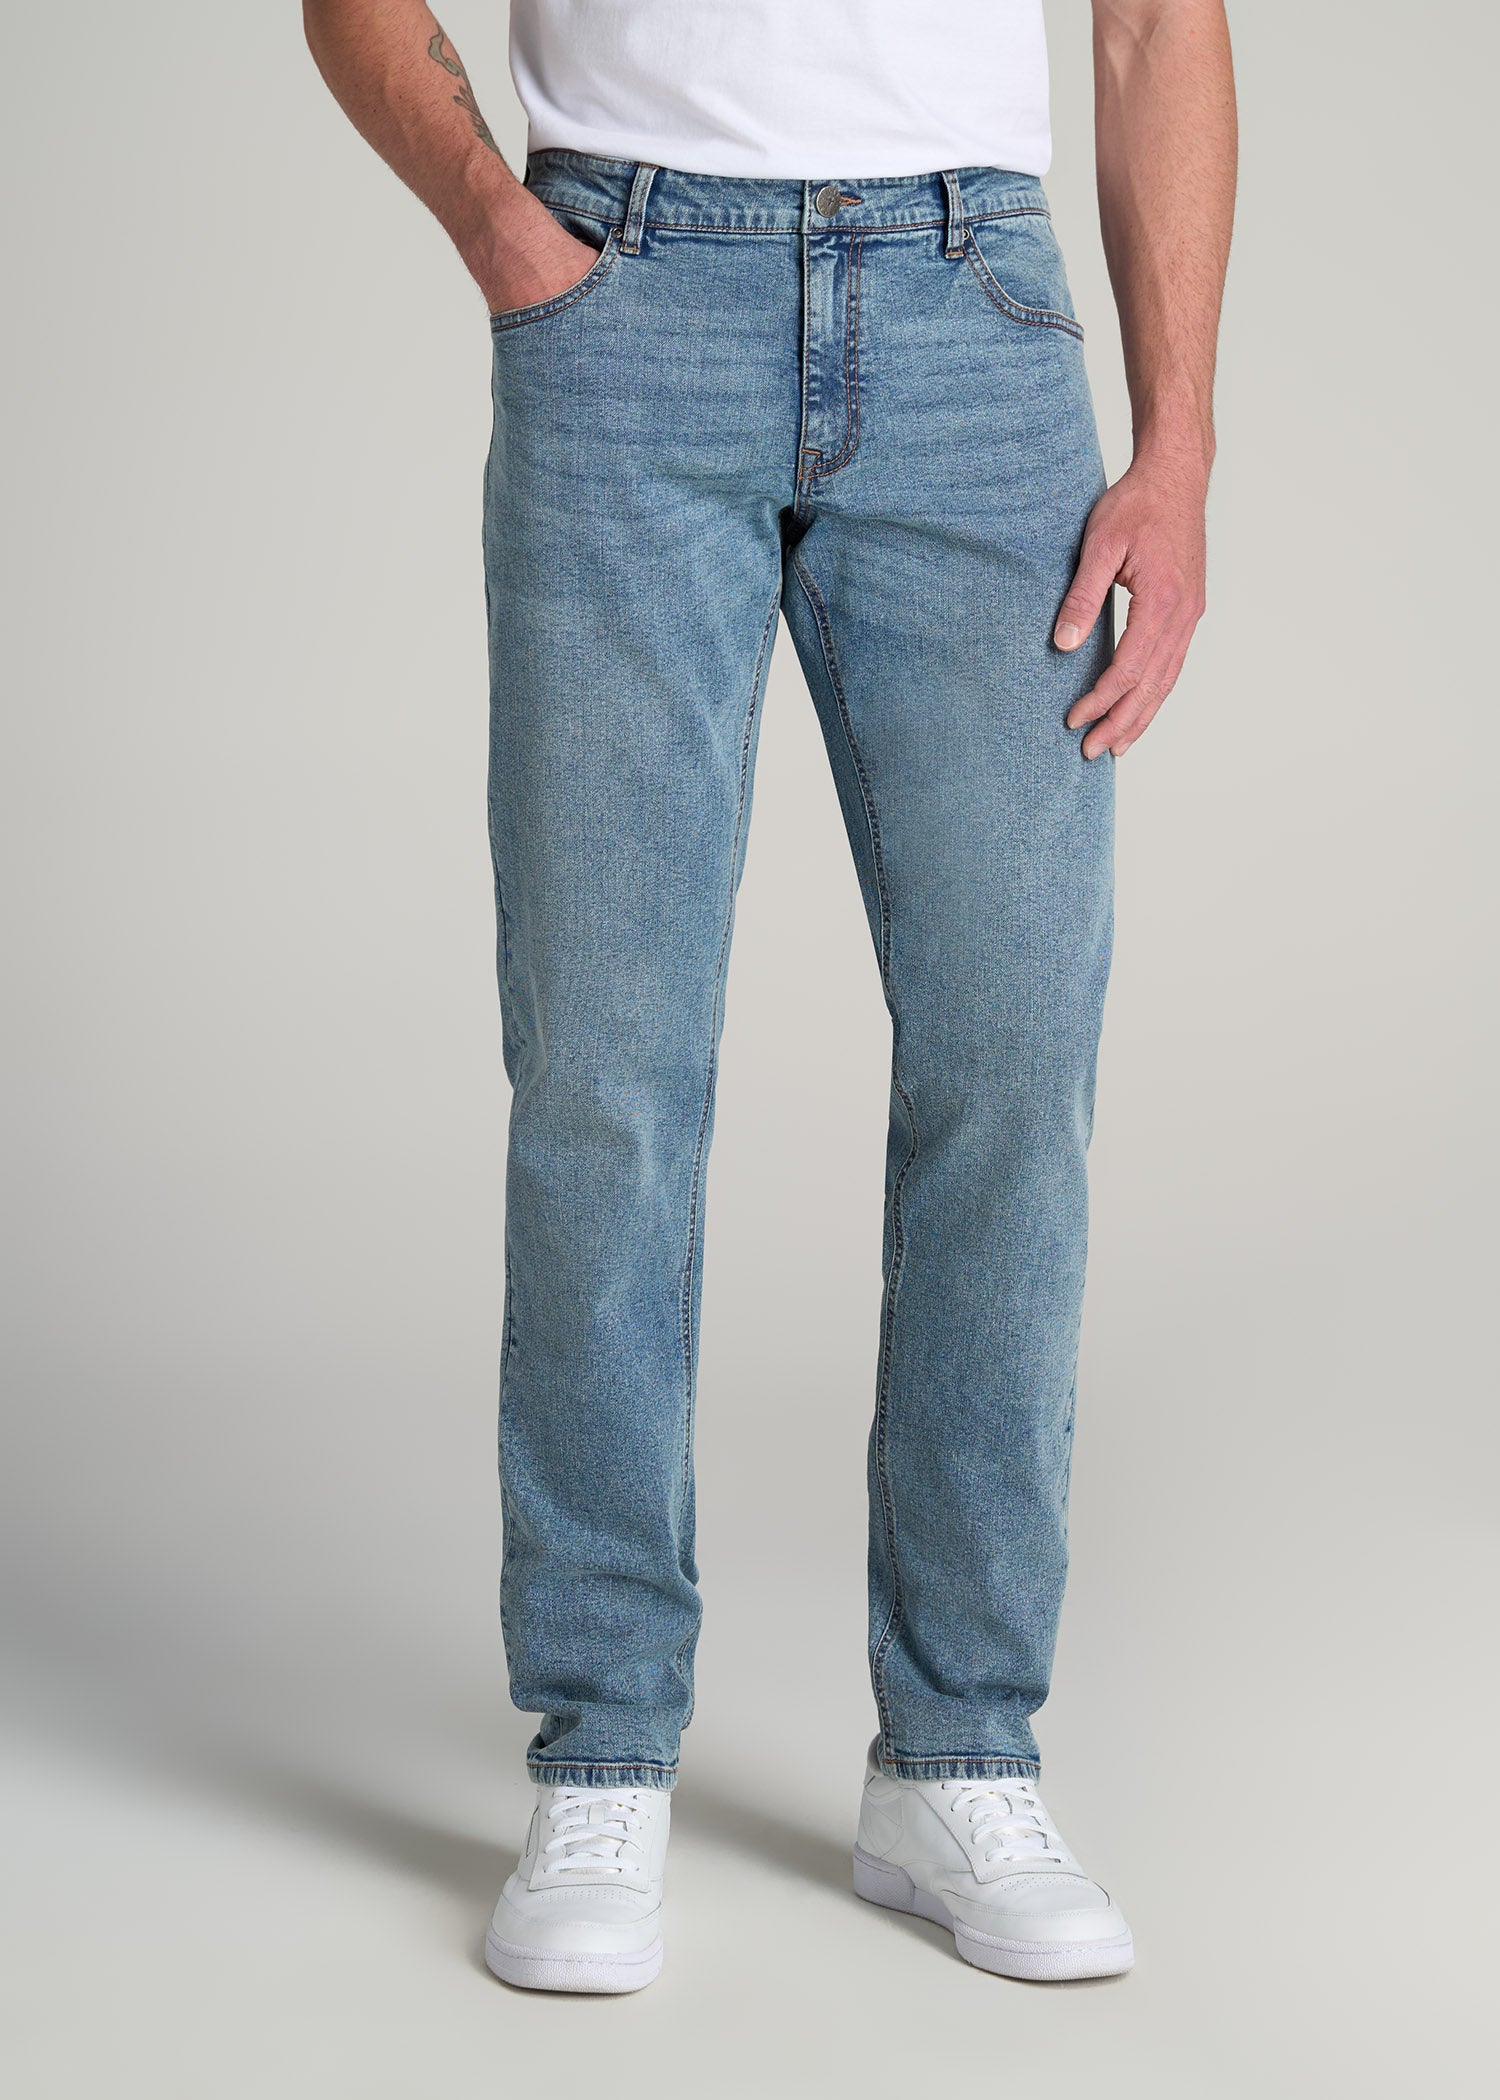 Regular Tapered Jeans - Light denim blue - Men